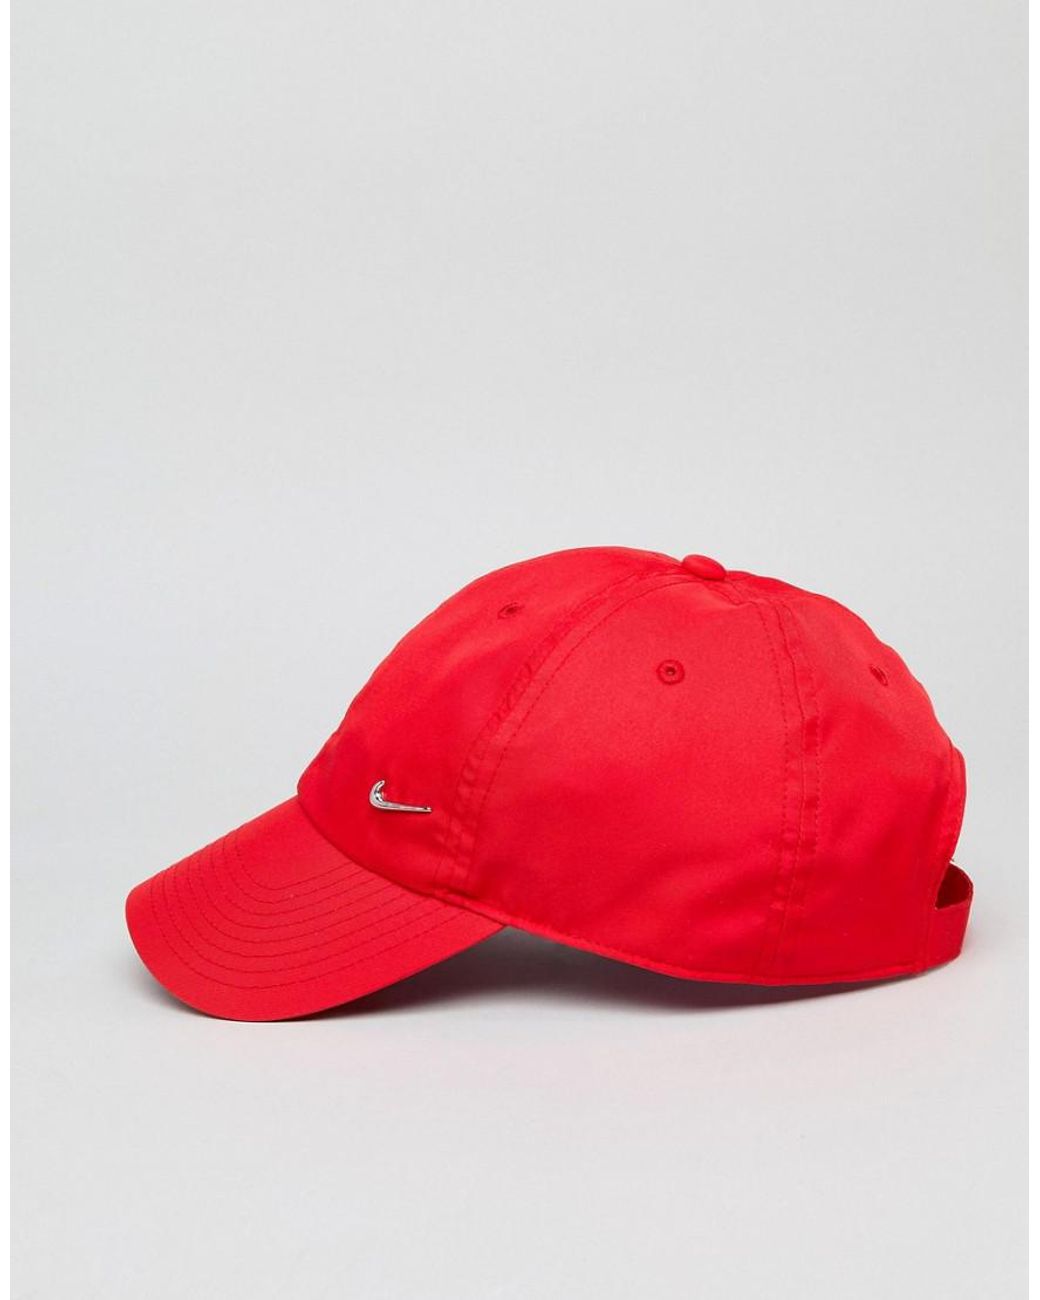 Nike Metal Swoosh Cap In Red 943092-657 for Men | Lyst Australia